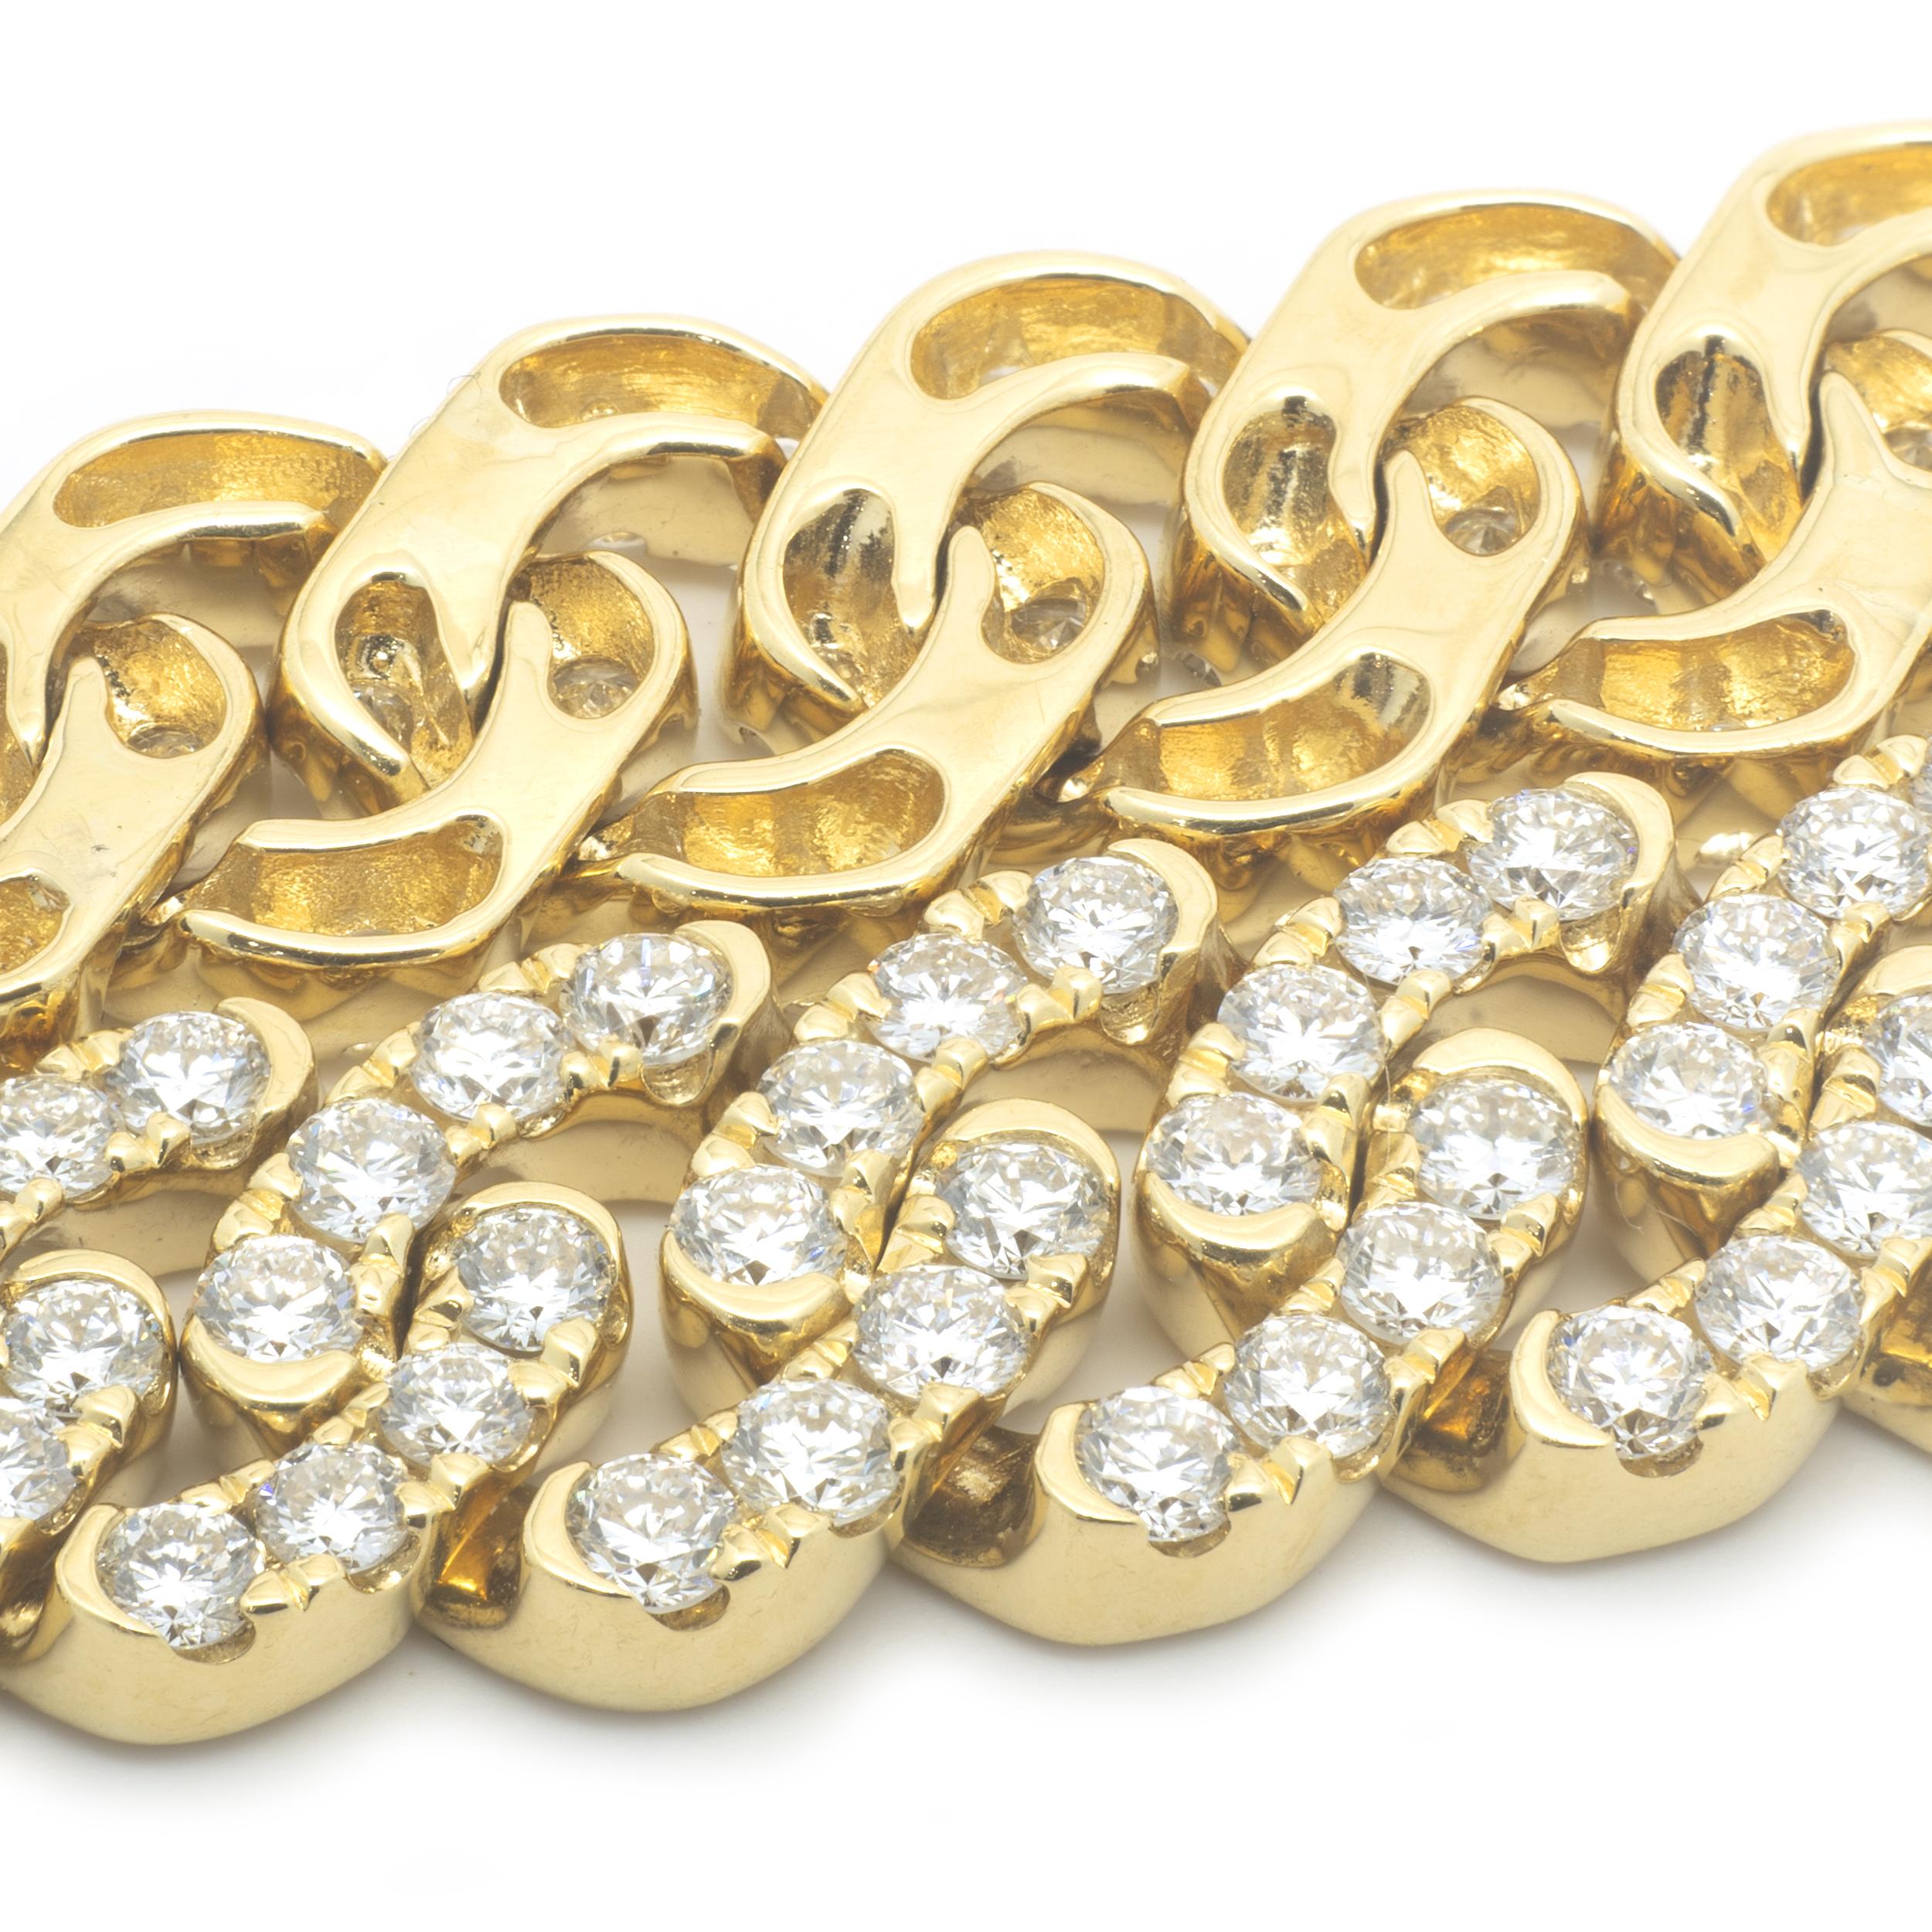 Concepteur : personnalisé
Matériau : Or jaune 18K
Diamants : 253 diamants ronds de taille brillant = 9,50cttw
Couleur : G
Clarté : VS2
Dimensions : le bracelet s'adapte à un poignet de 7.25 pouces.
Poids : 36,92 grammes
